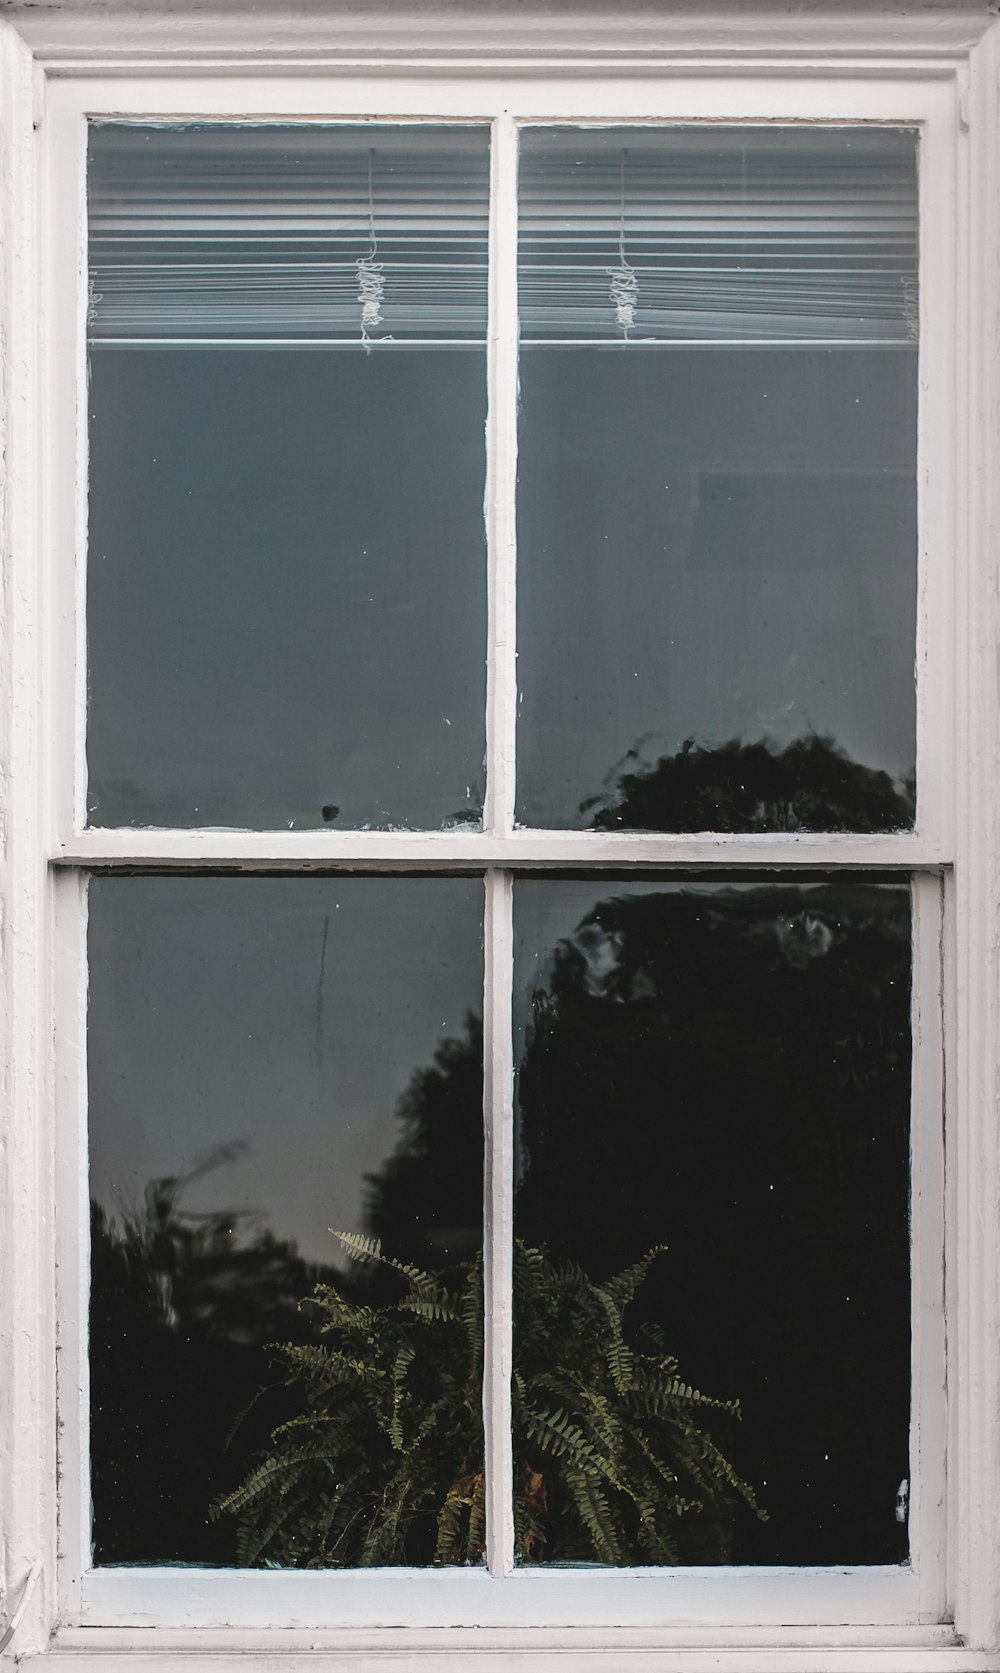 ventana de panel de vidrio con marco de madera blanca con persianas blancas